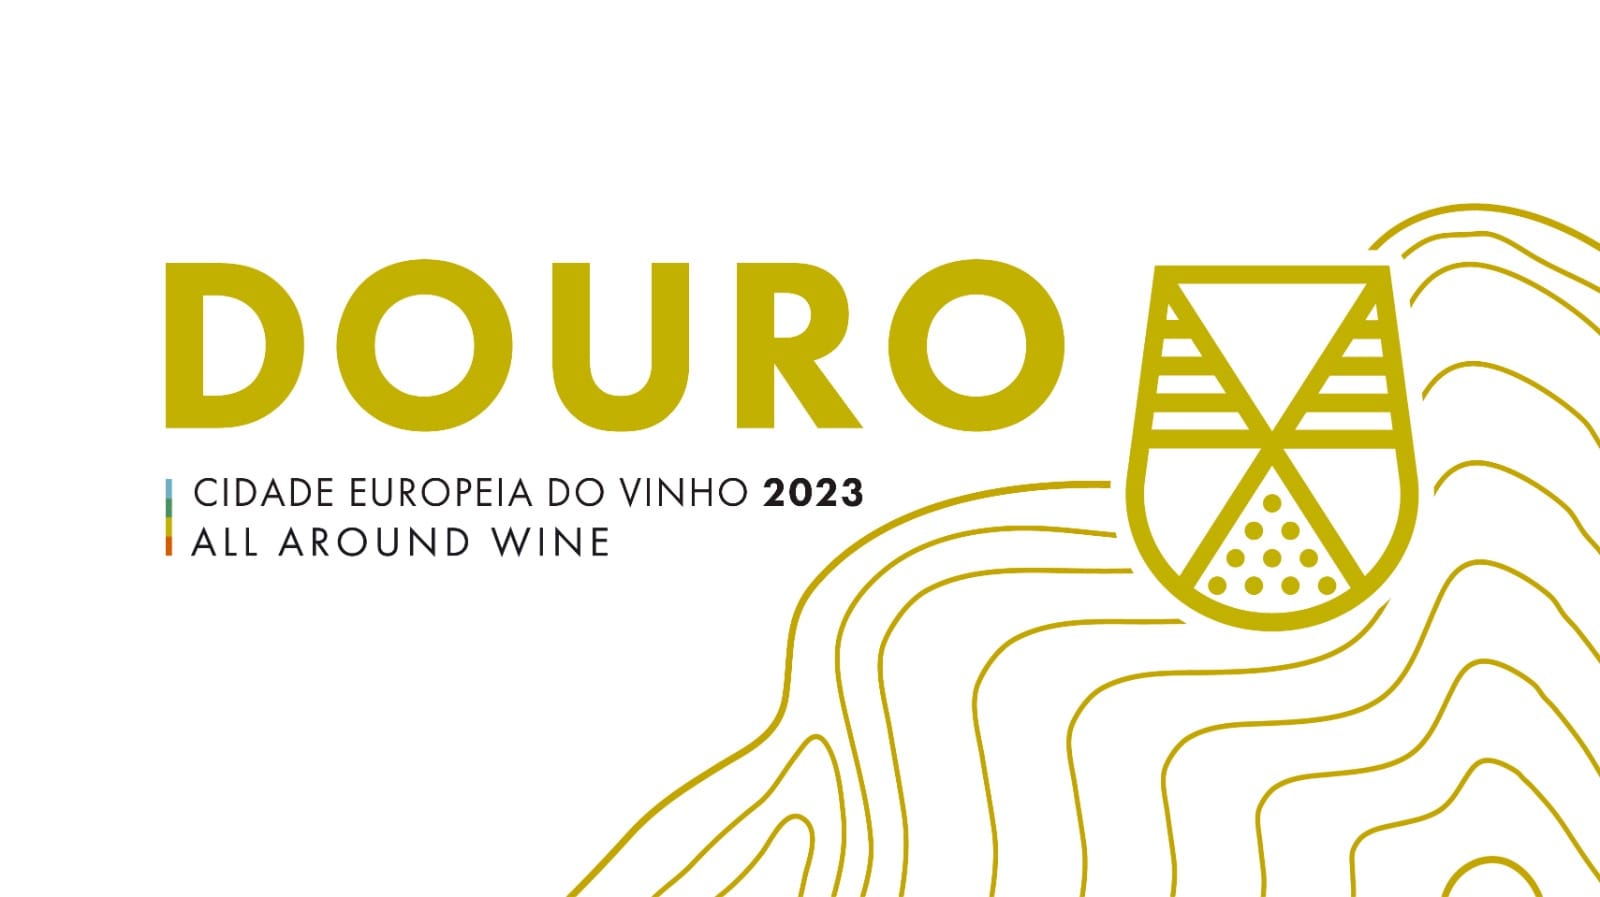 Douro All Around Wine